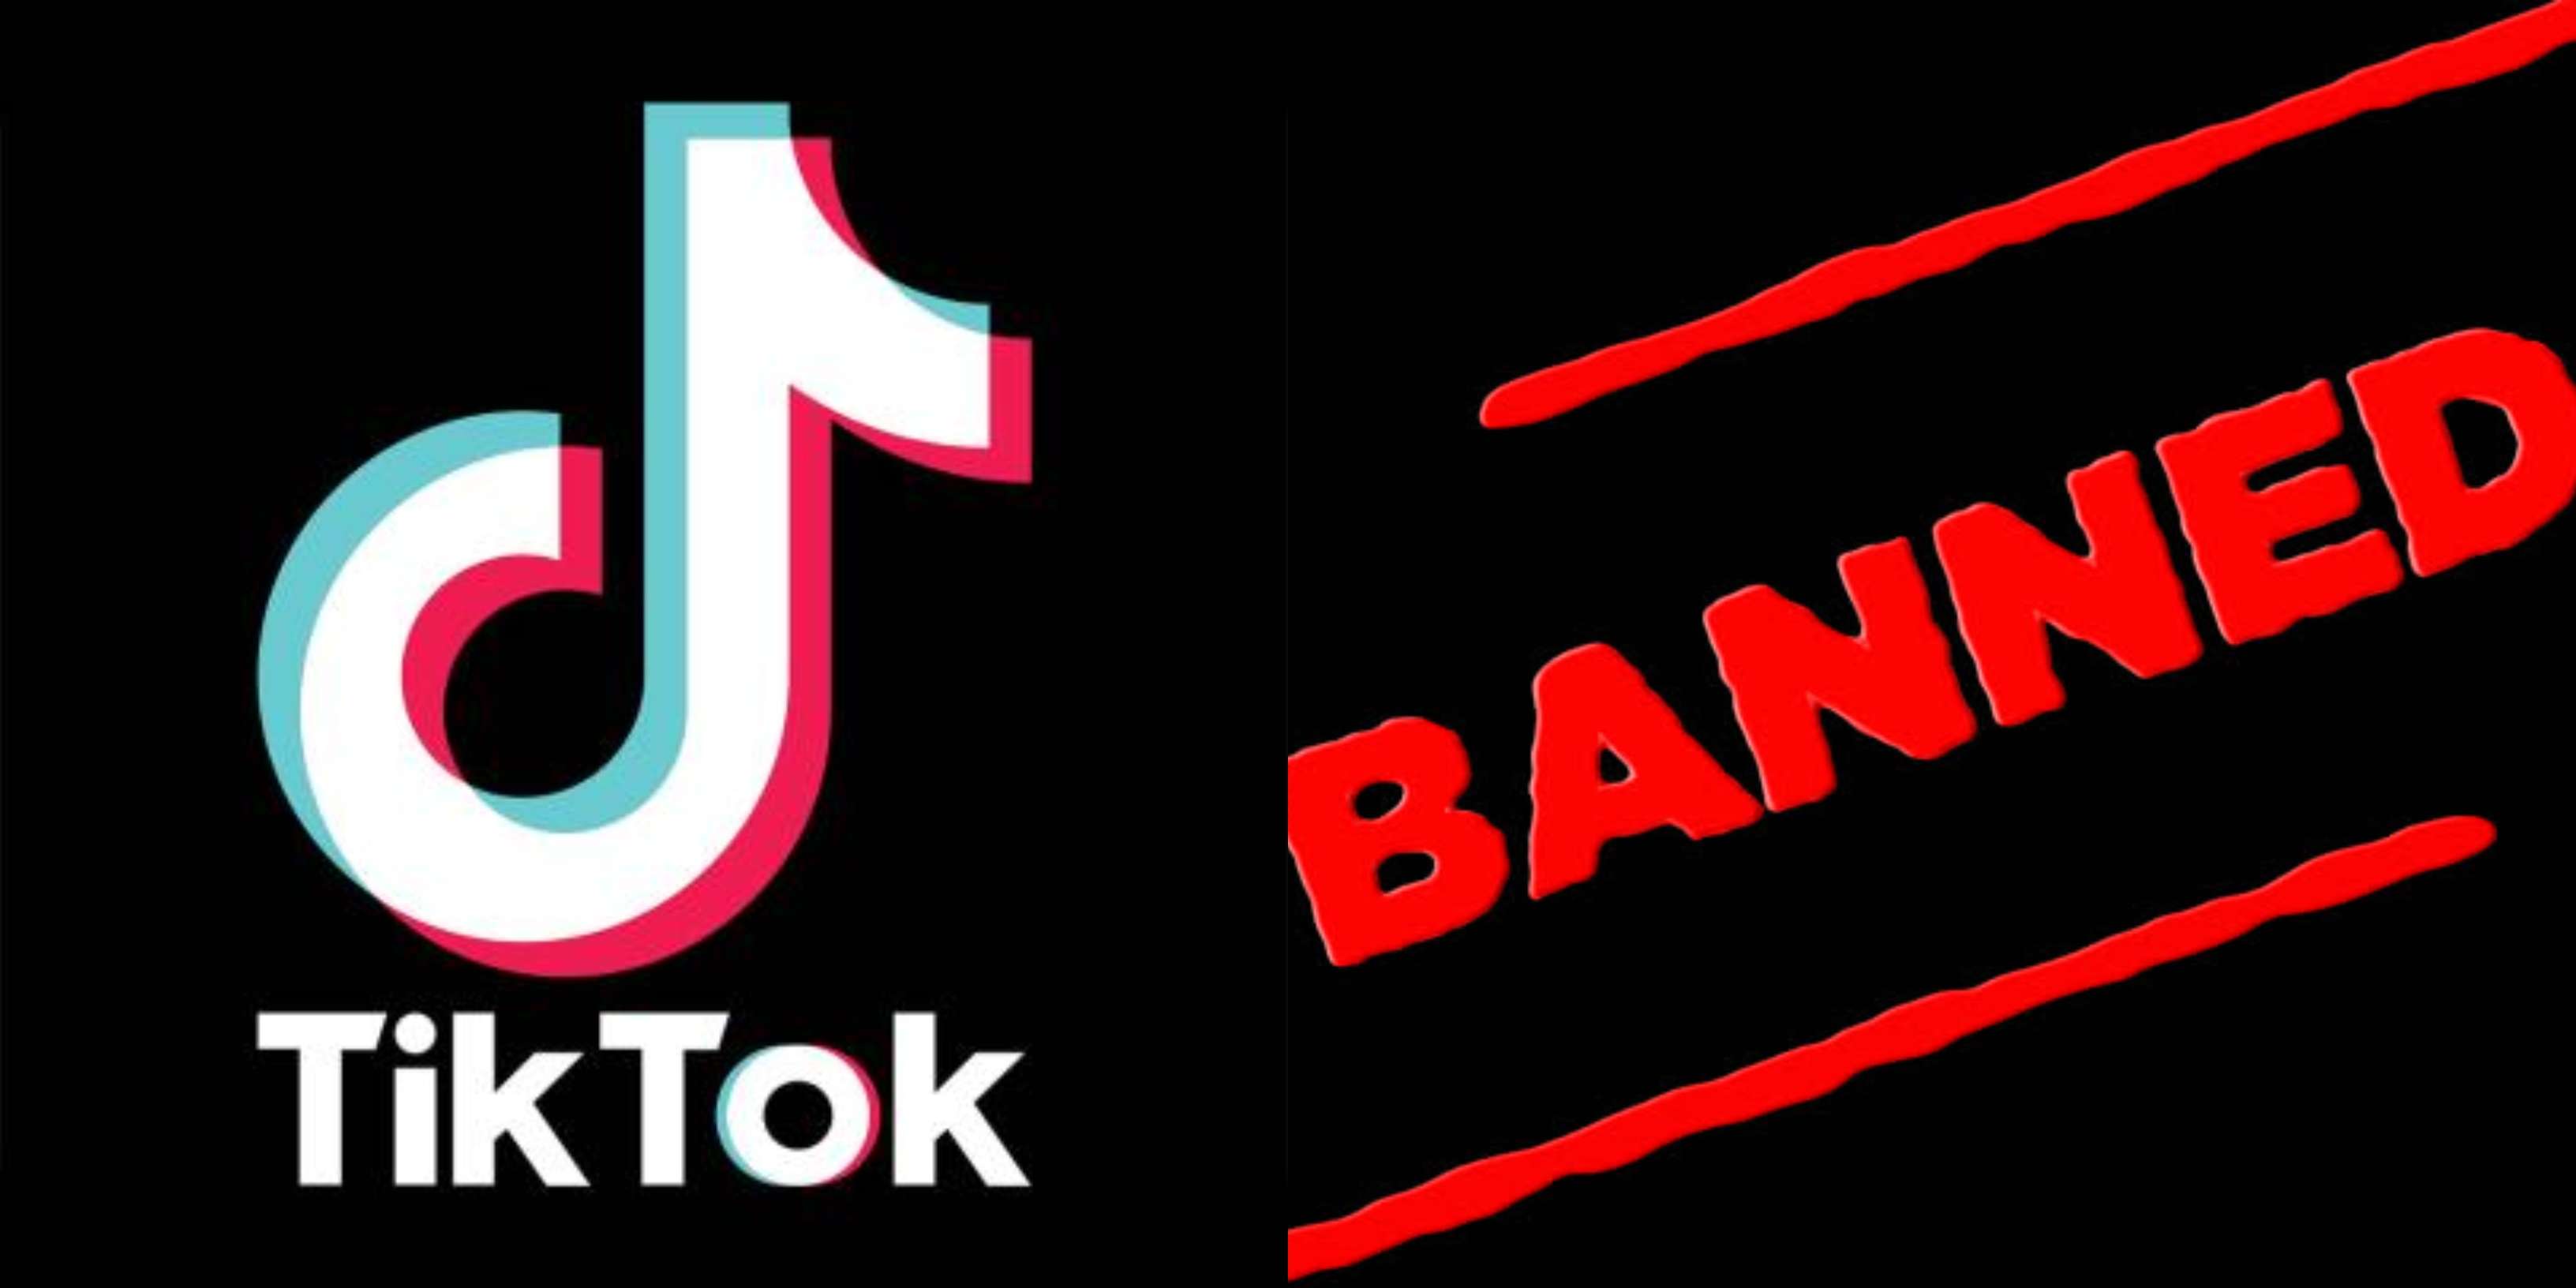 TiK ToK: Regulate, don't ban, say app users & parents after calls to ban  TikTok - Times of India